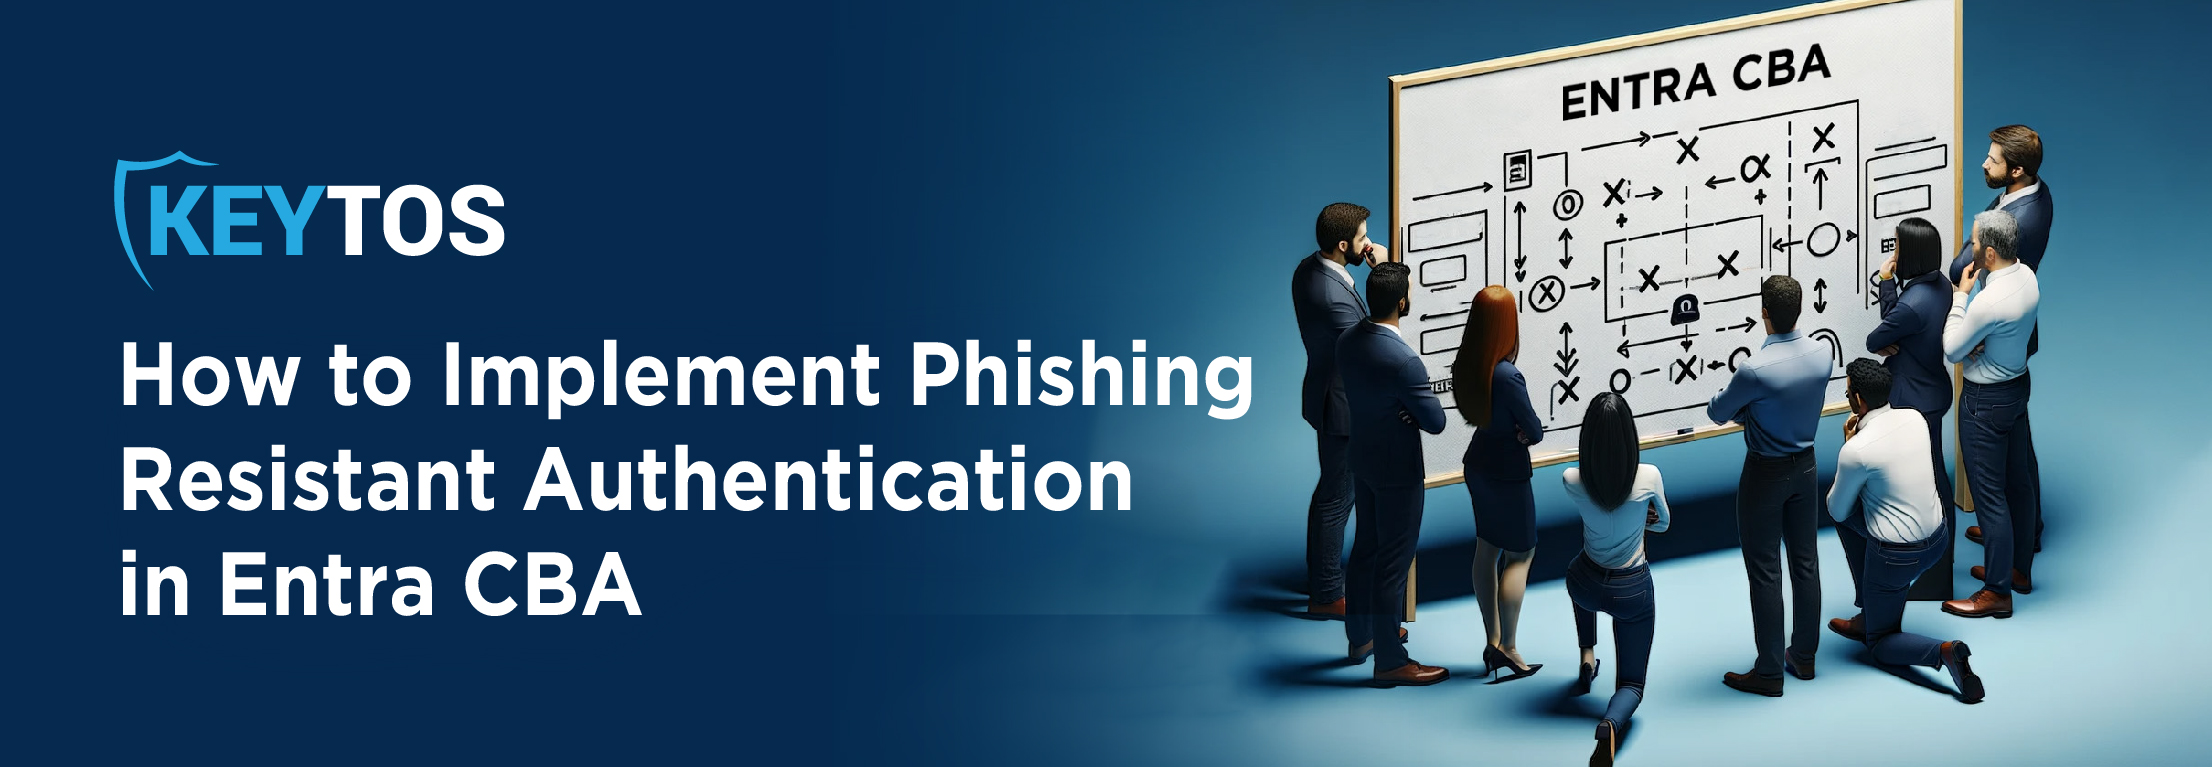 Como Implementar la Autenticación Resistente al Phishing en Entra ID con Entra CBA y FIDO2 Passkeys